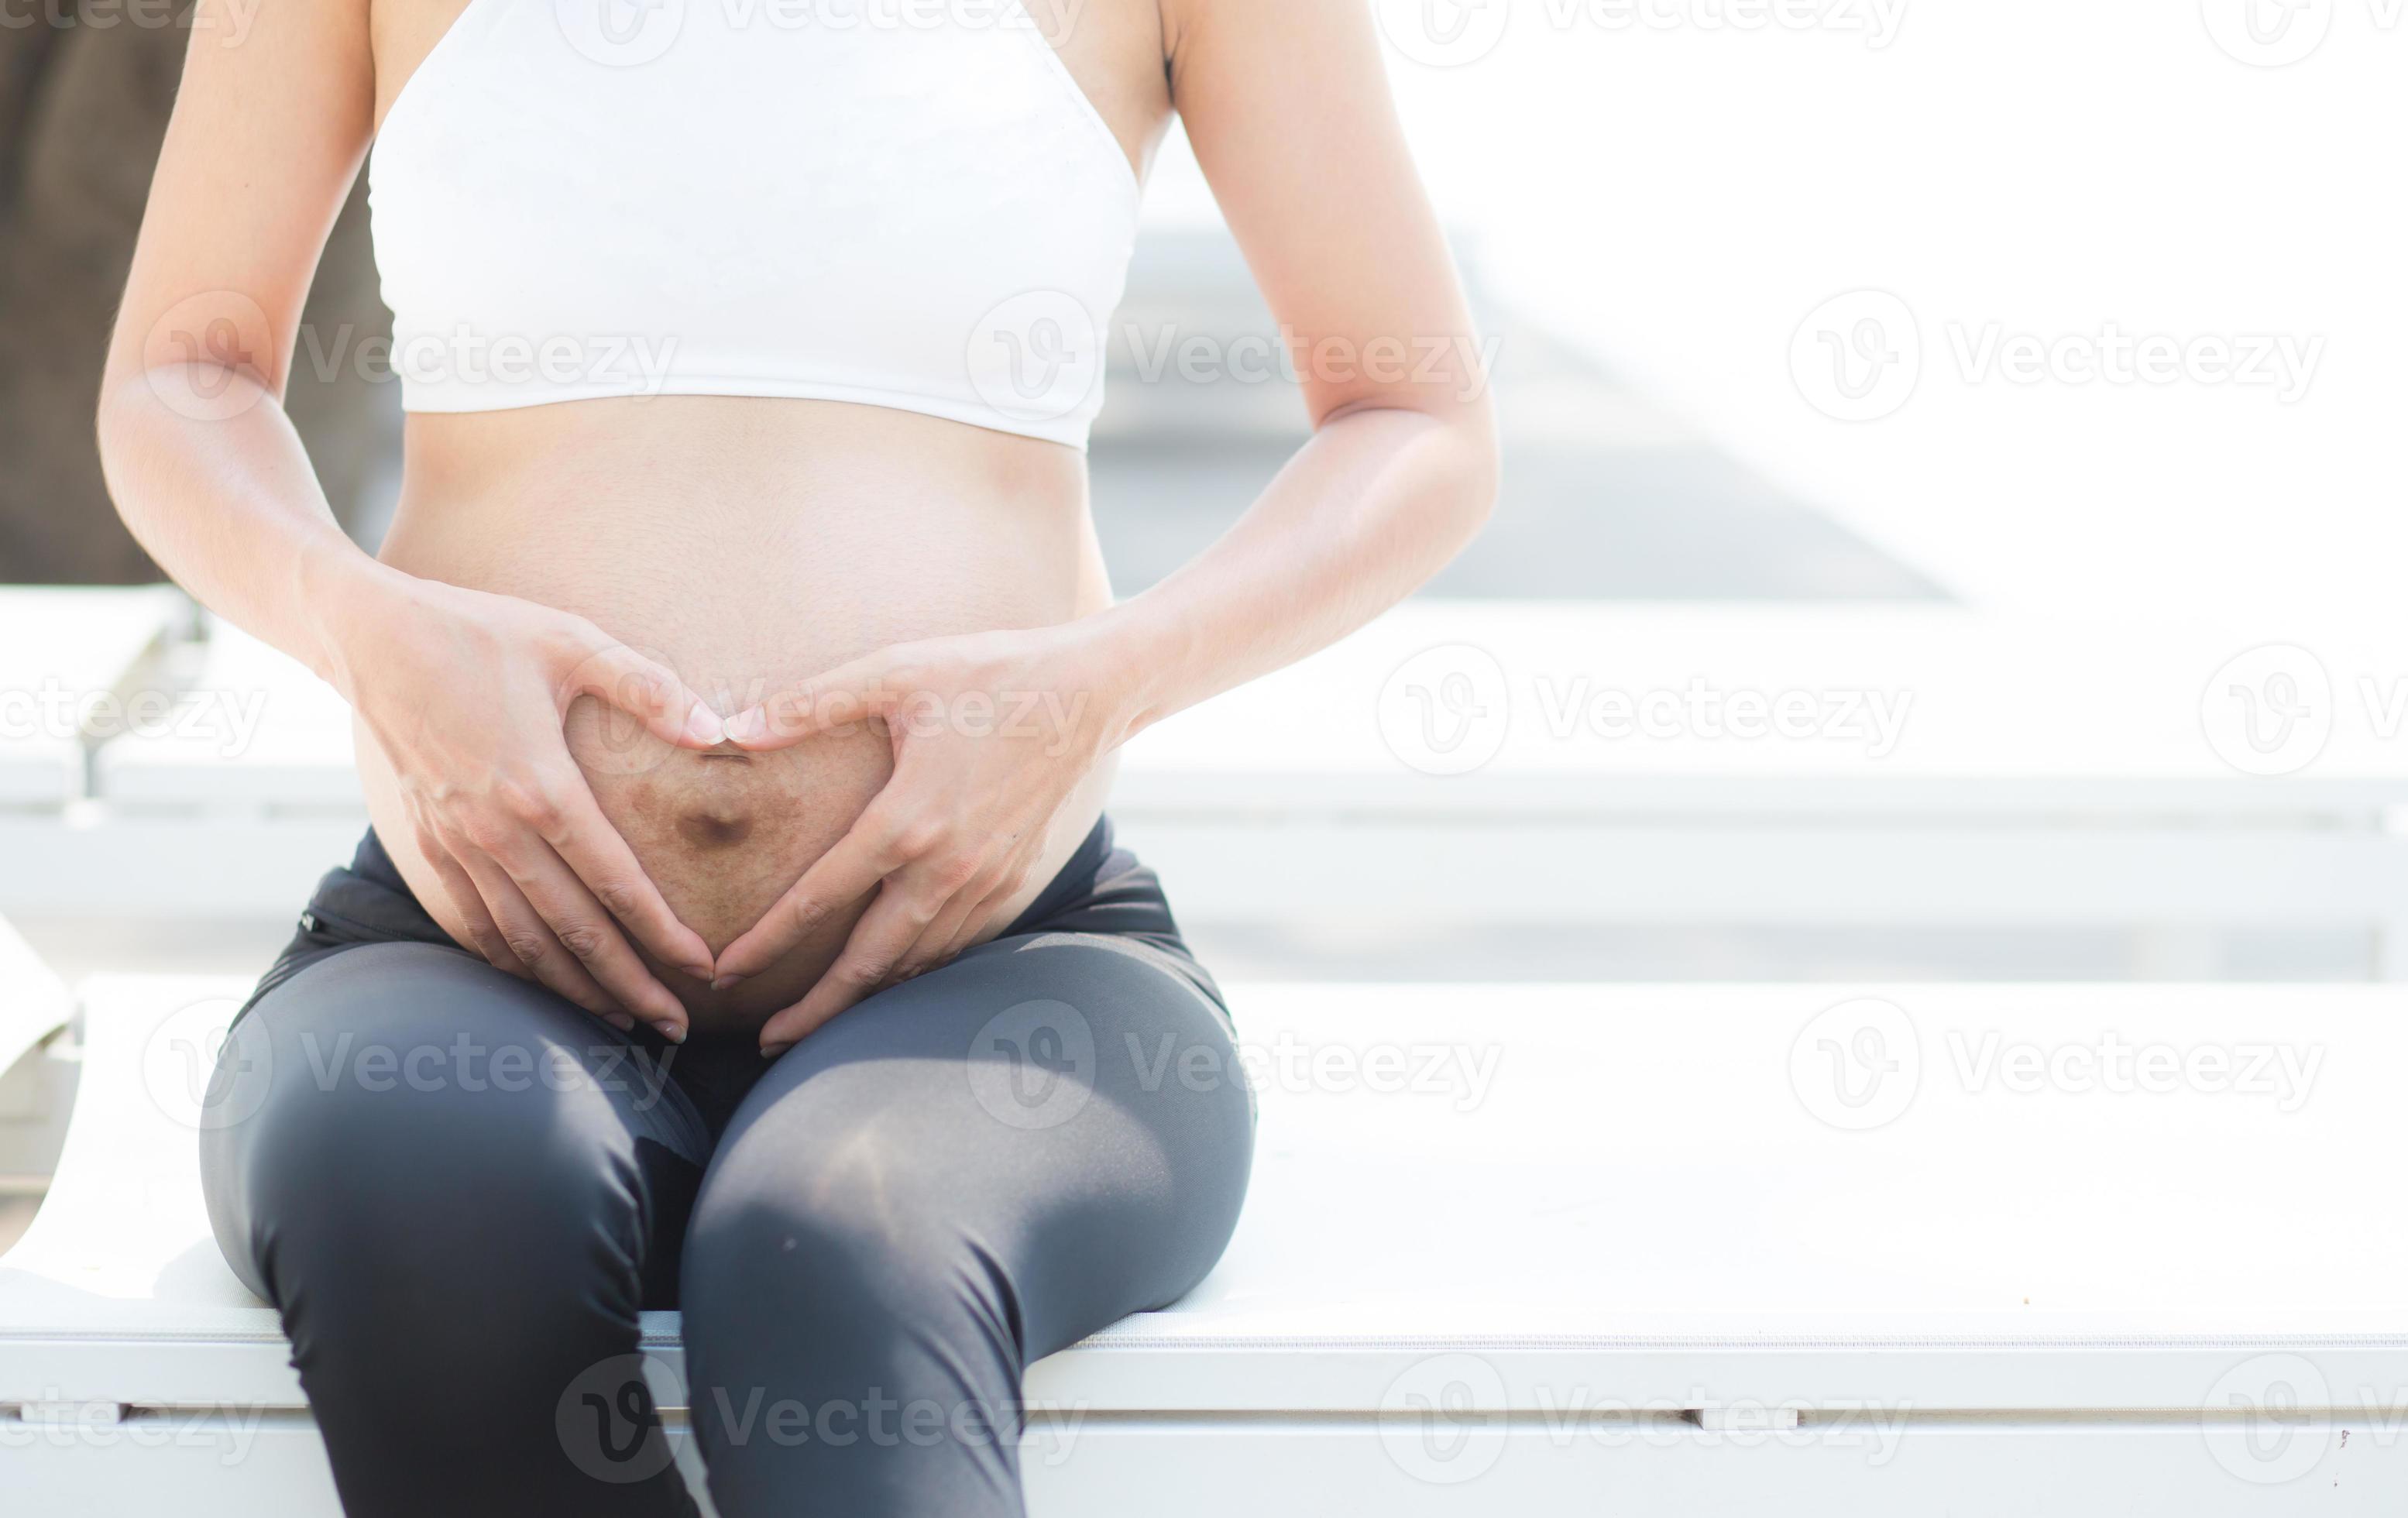 zwangere Aziatische jonge vrouw ontspannen in het park. foto